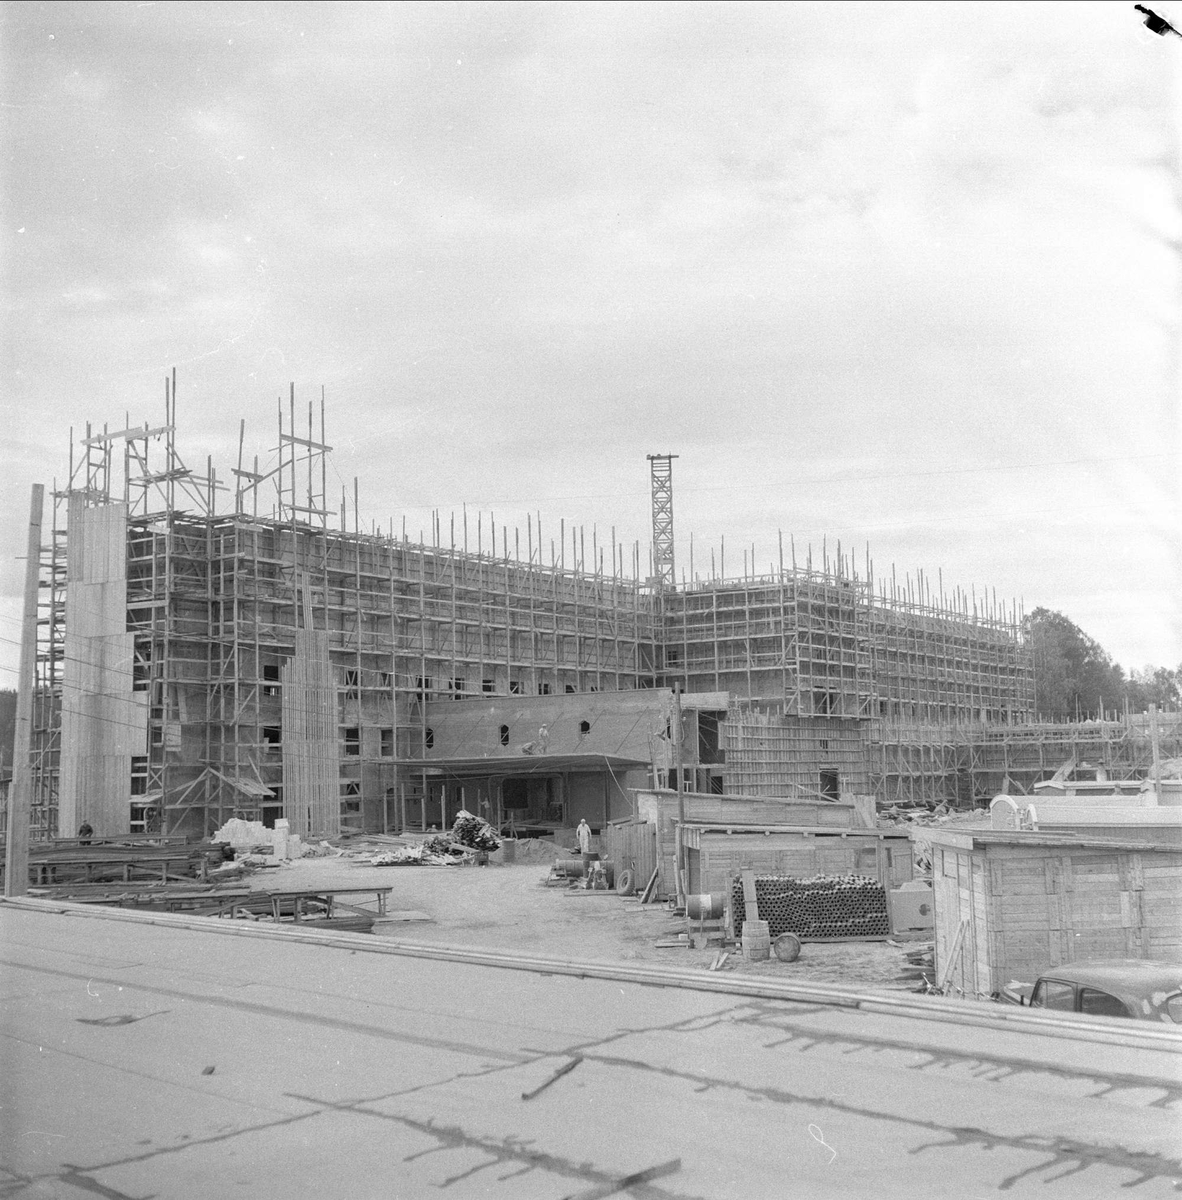 Lørenskog, Akershus, 03.06.1957. Akershus fylkessykehus under bygging.